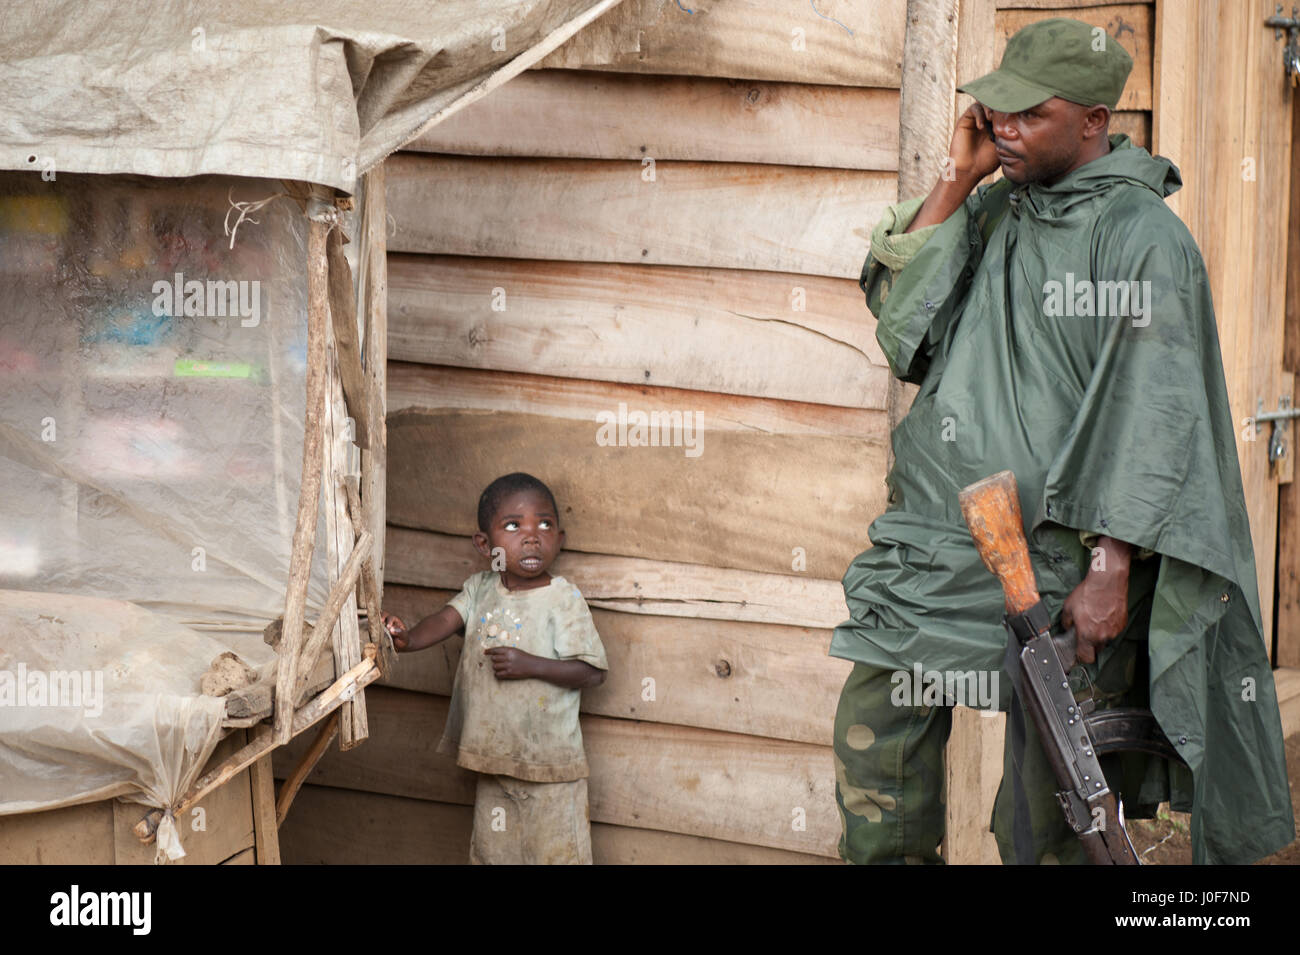 Un soldat des FARDC au cours d'opérations contre le groupe rebelle du M23 au Congo, RDC Banque D'Images